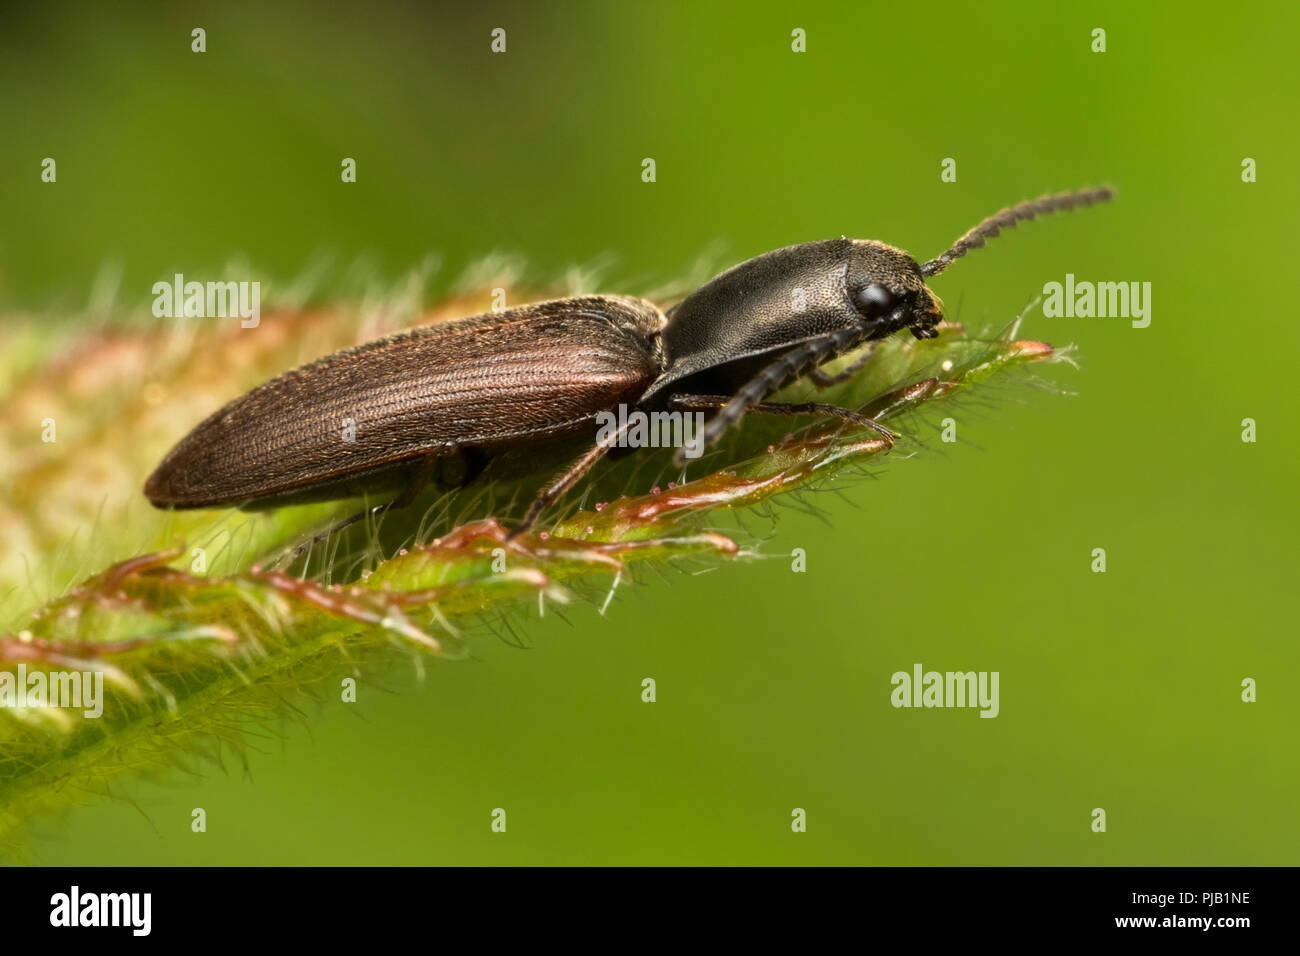 Klicken Sie auf Käfer in Ruhe am Rand des Blattes. Tipperary, Irland Stockfoto